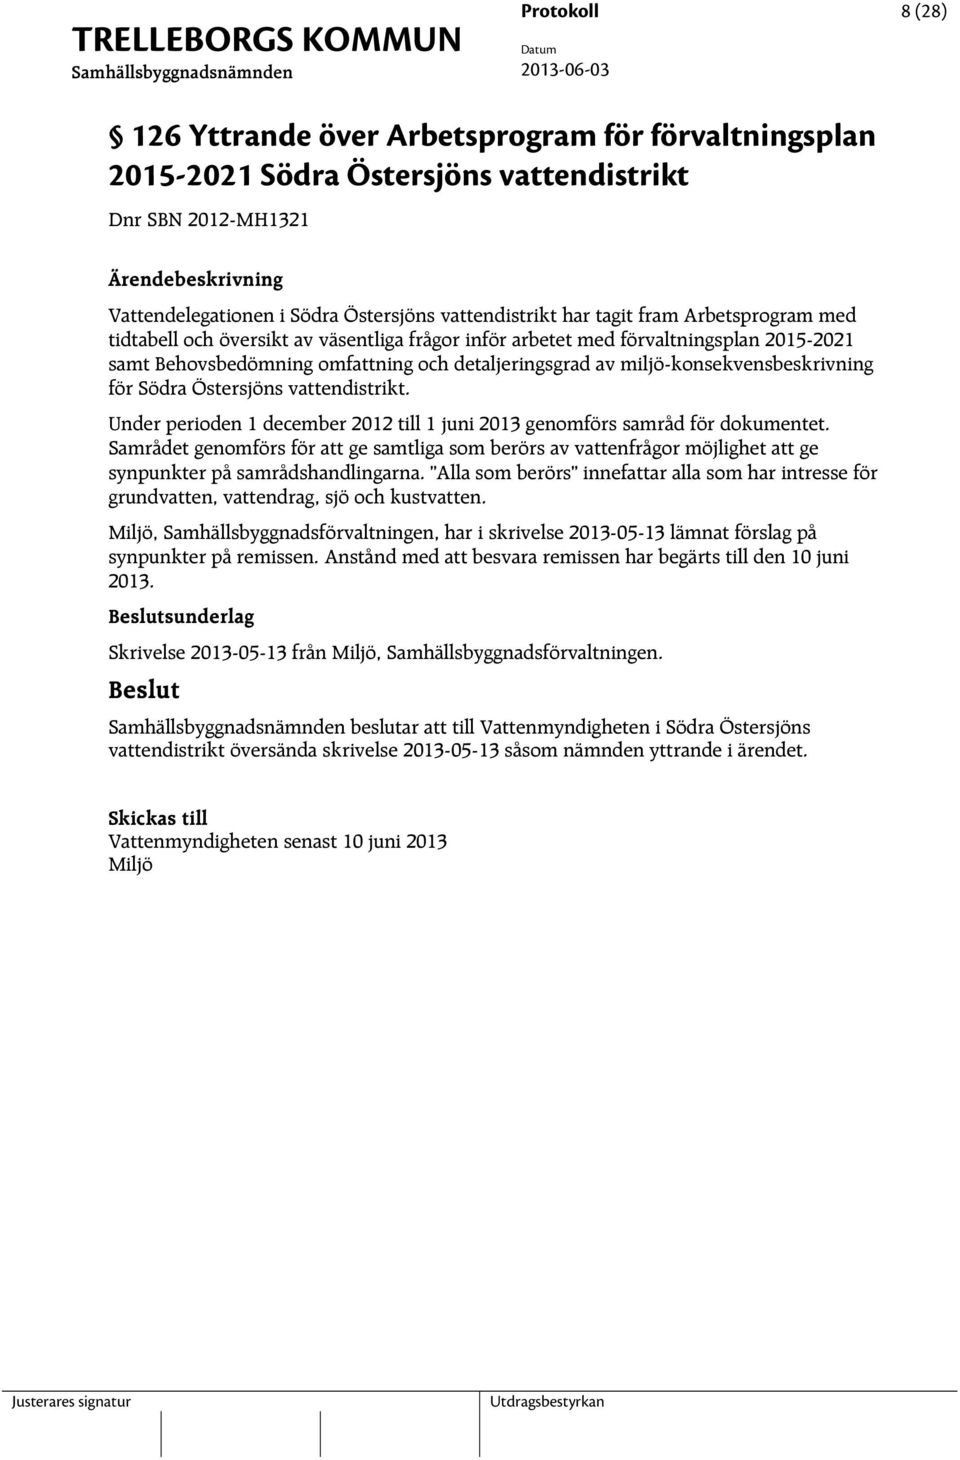 Södra Östersjöns vattendistrikt. Under perioden 1 december 2012 till 1 juni 2013 genomförs samråd för dokumentet.